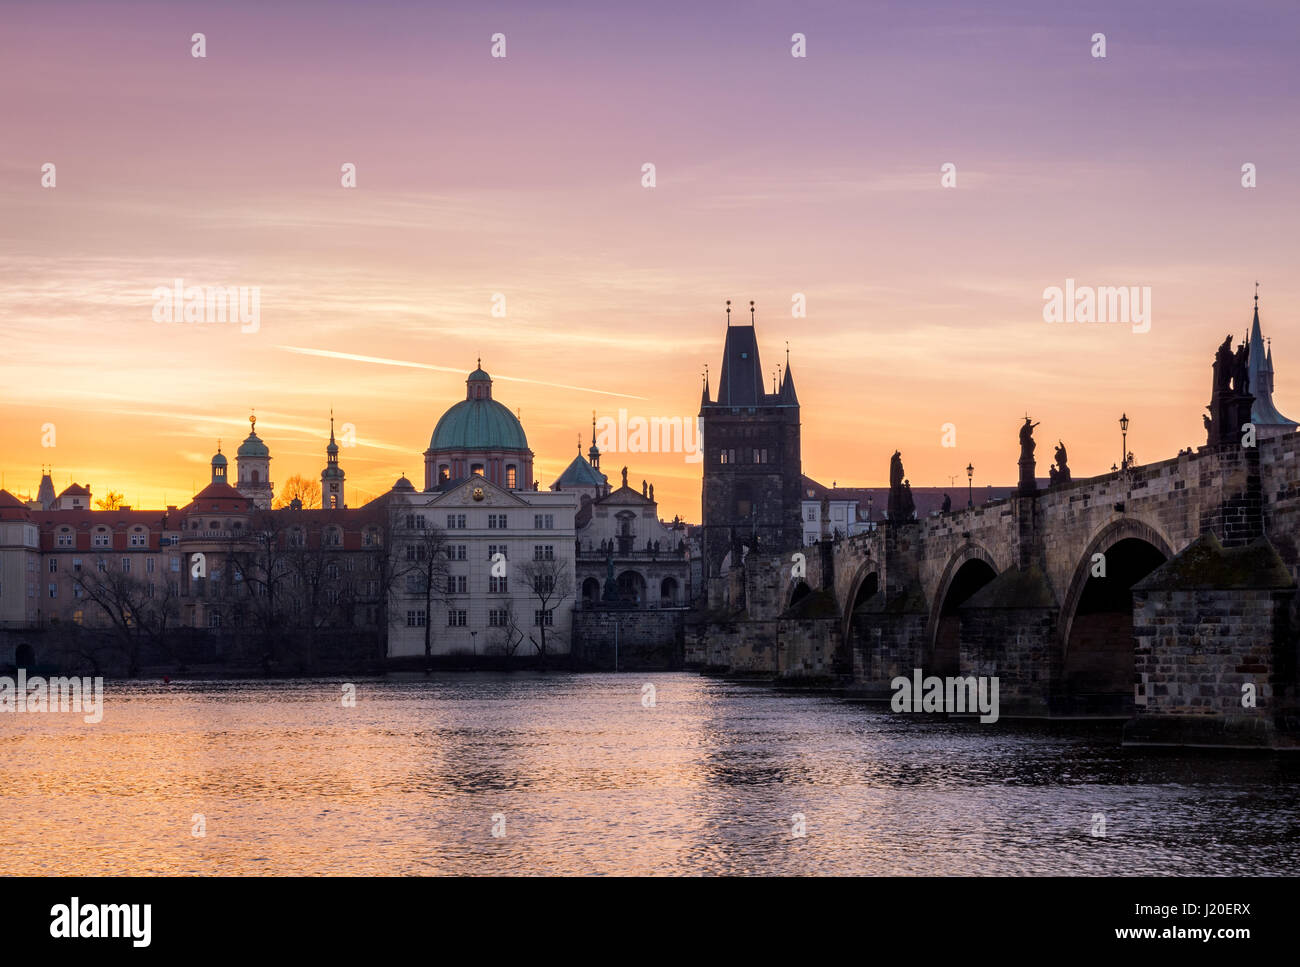 Prag, Tschechische Republik. Karlsbrücke mit der Statue und Sonnenaufgang über der Brücke, Altstädter Brückenturm im Hintergrund. Stockfoto